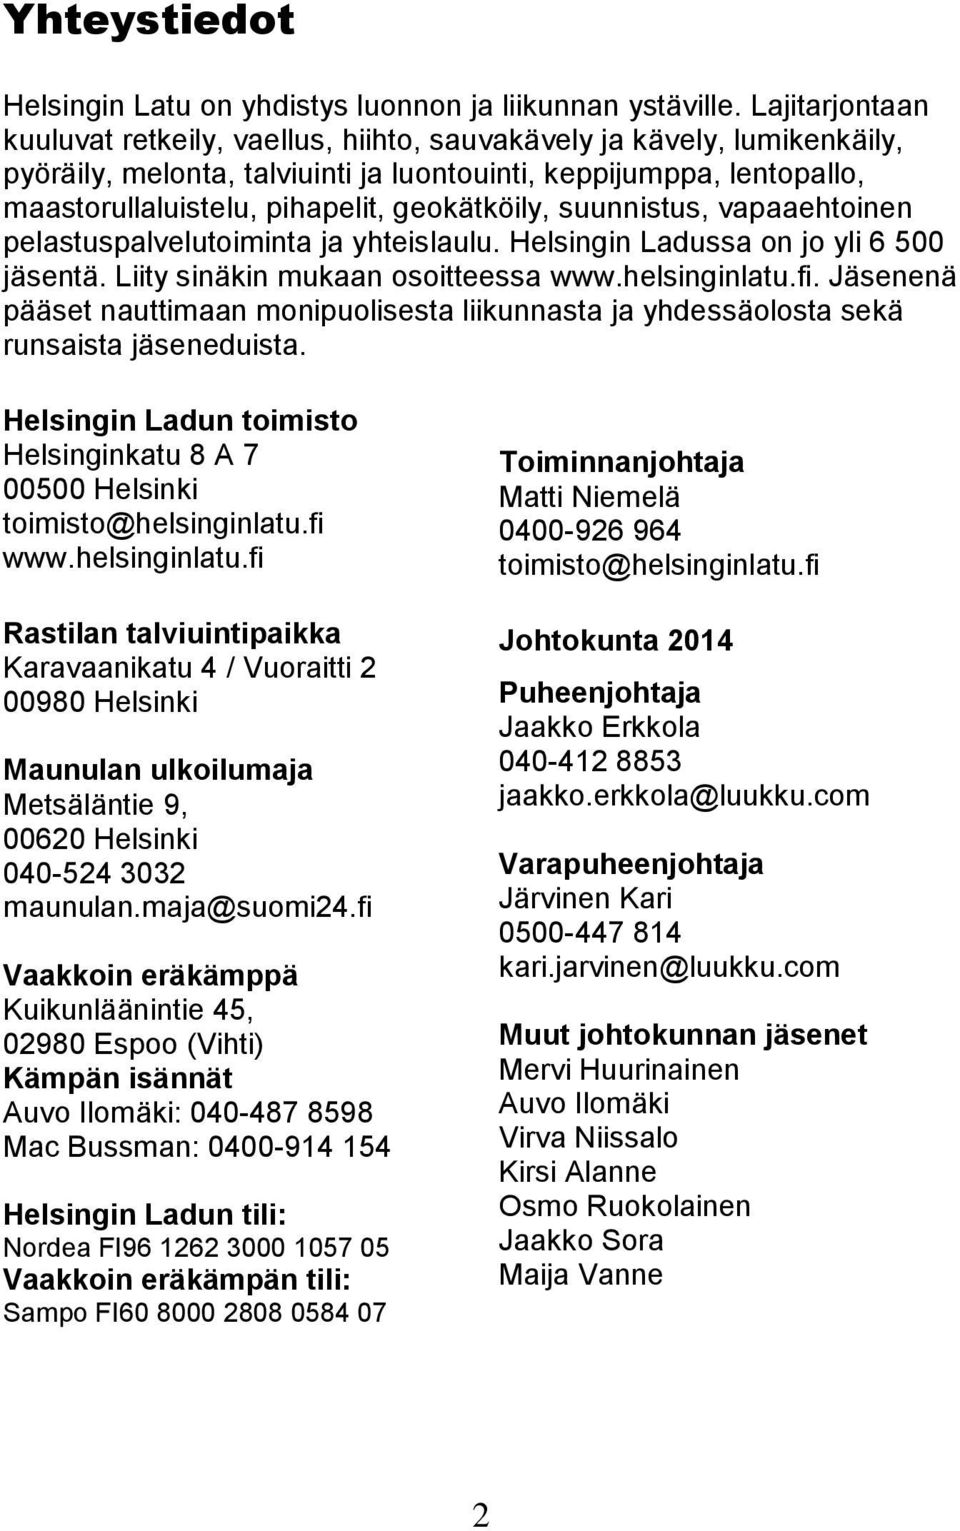 geokätköily, suunnistus, vapaaehtoinen pelastuspalvelutoiminta ja yhteislaulu. Helsingin Ladussa on jo yli 6 500 jäsentä. Liity sinäkin mukaan osoitteessa www.helsinginlatu.fi.